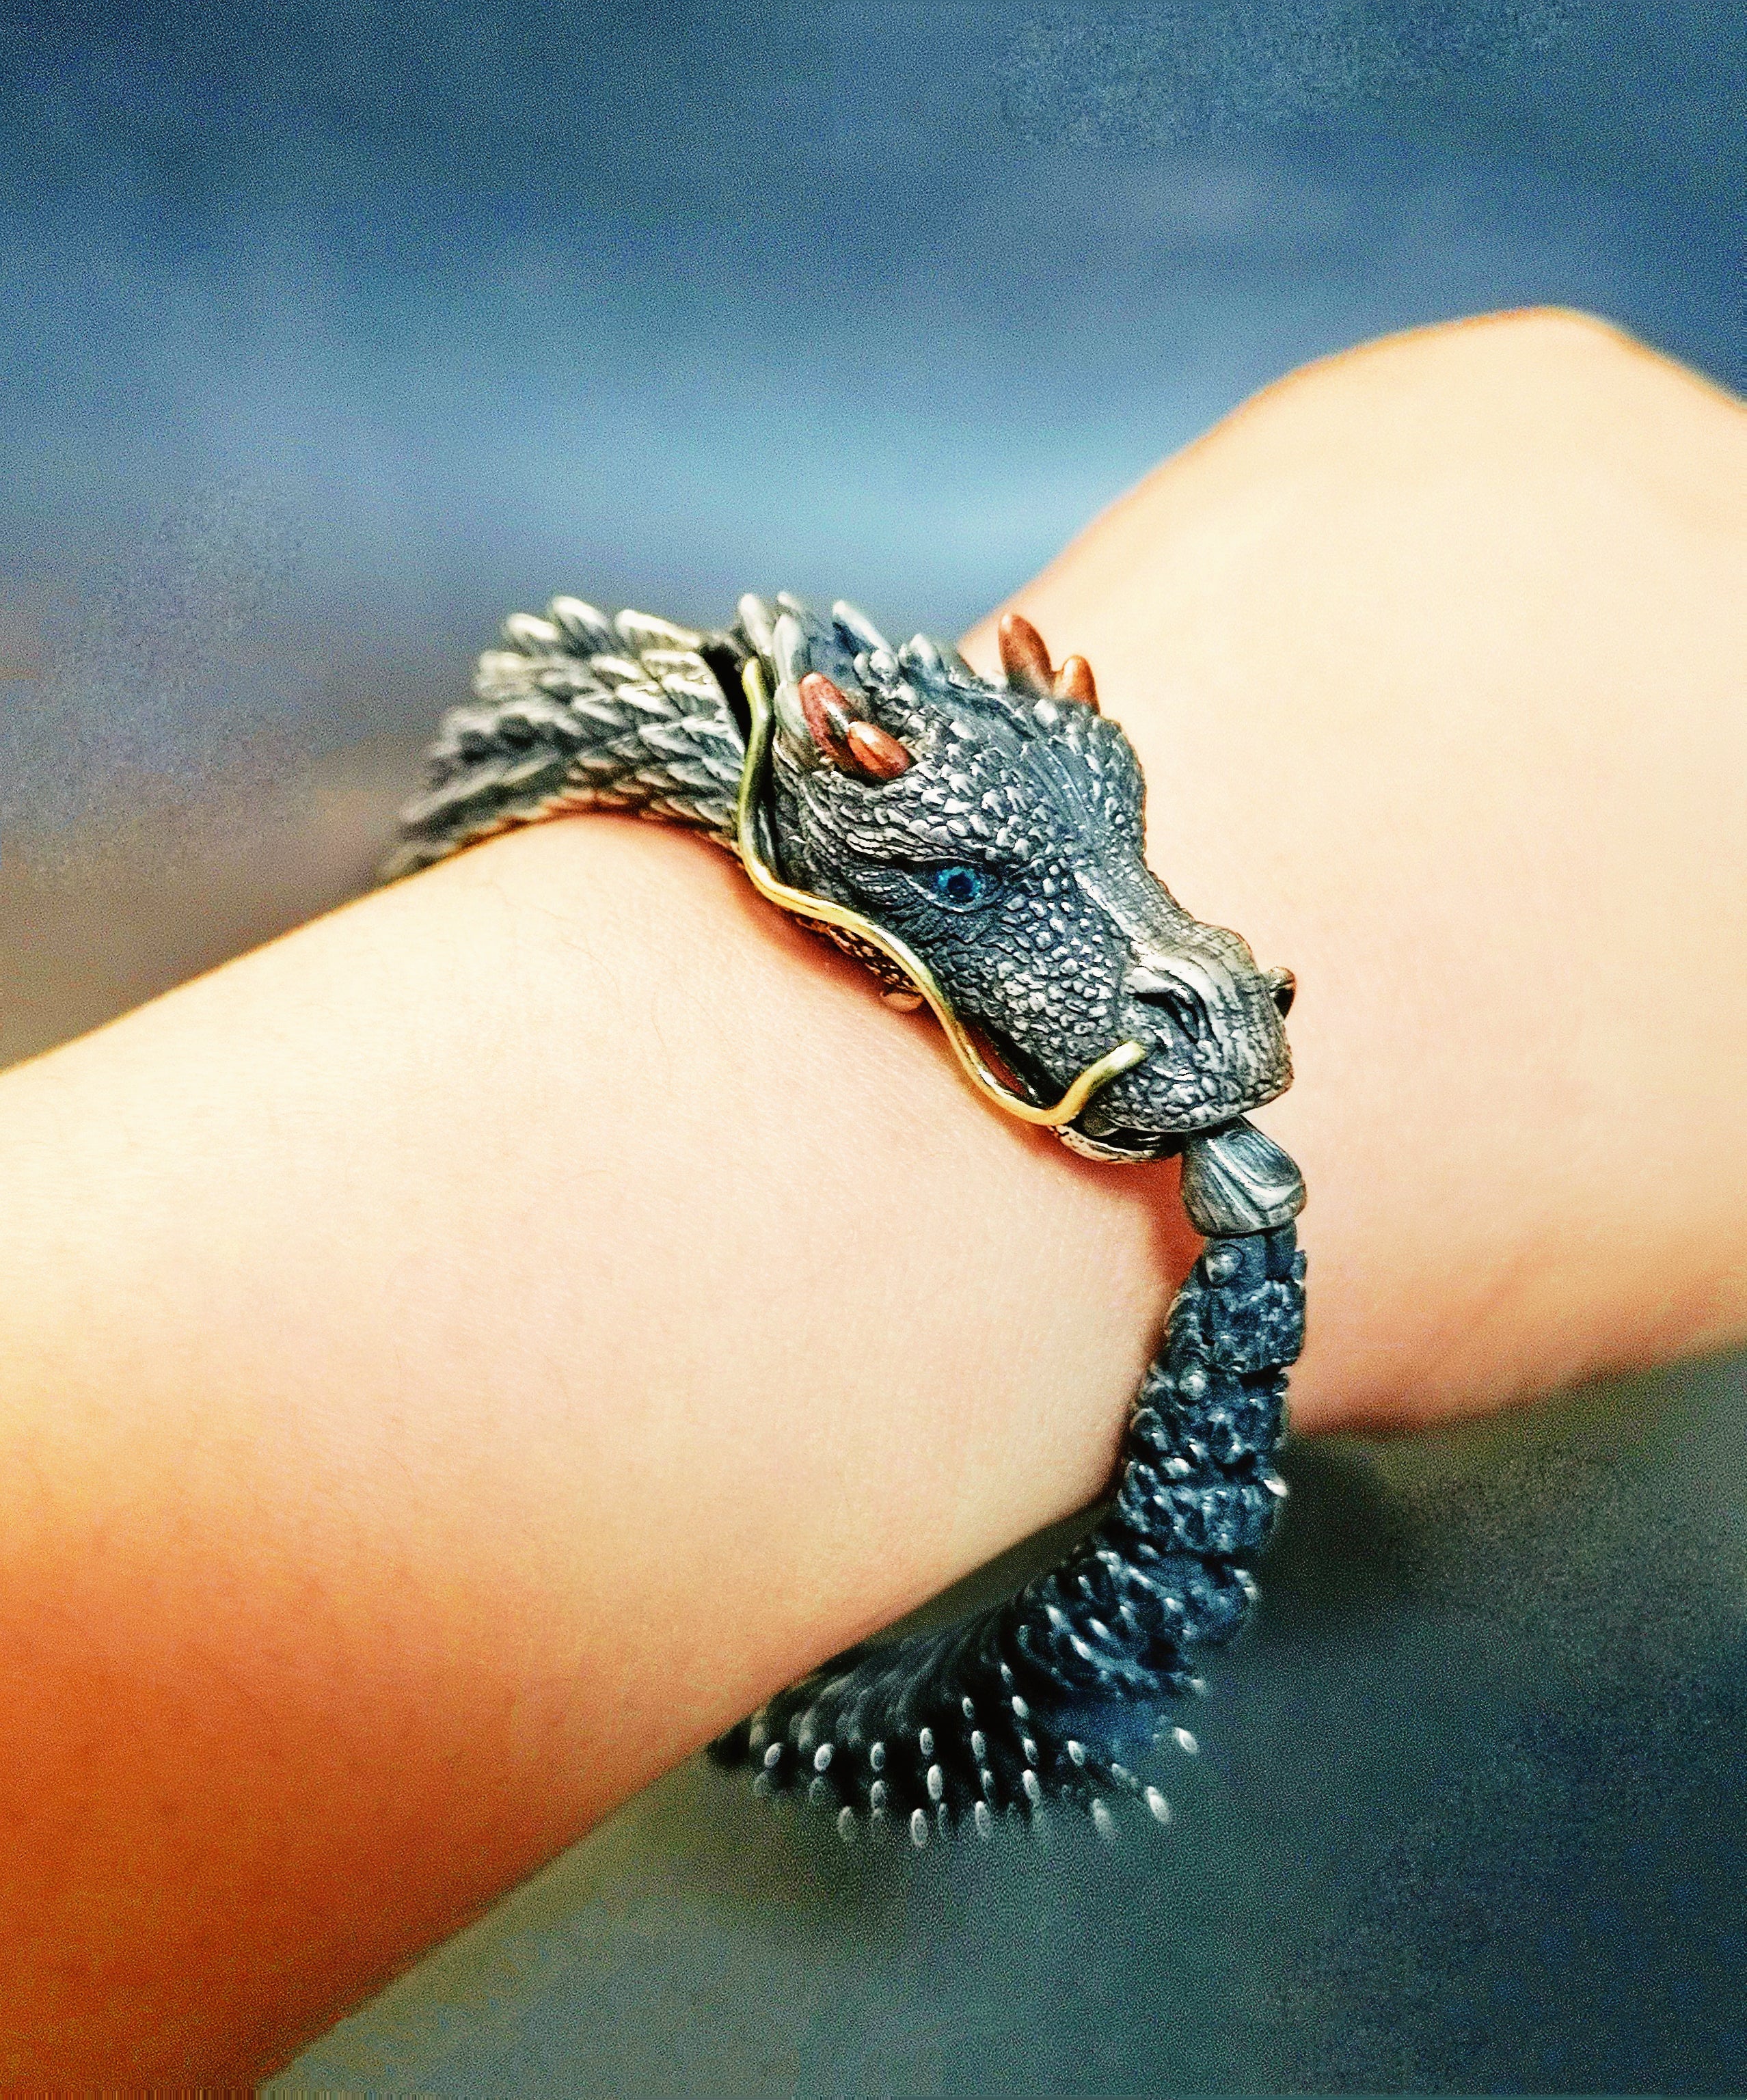 Dragon Silver Bracelet Chain (Item No. B0431)